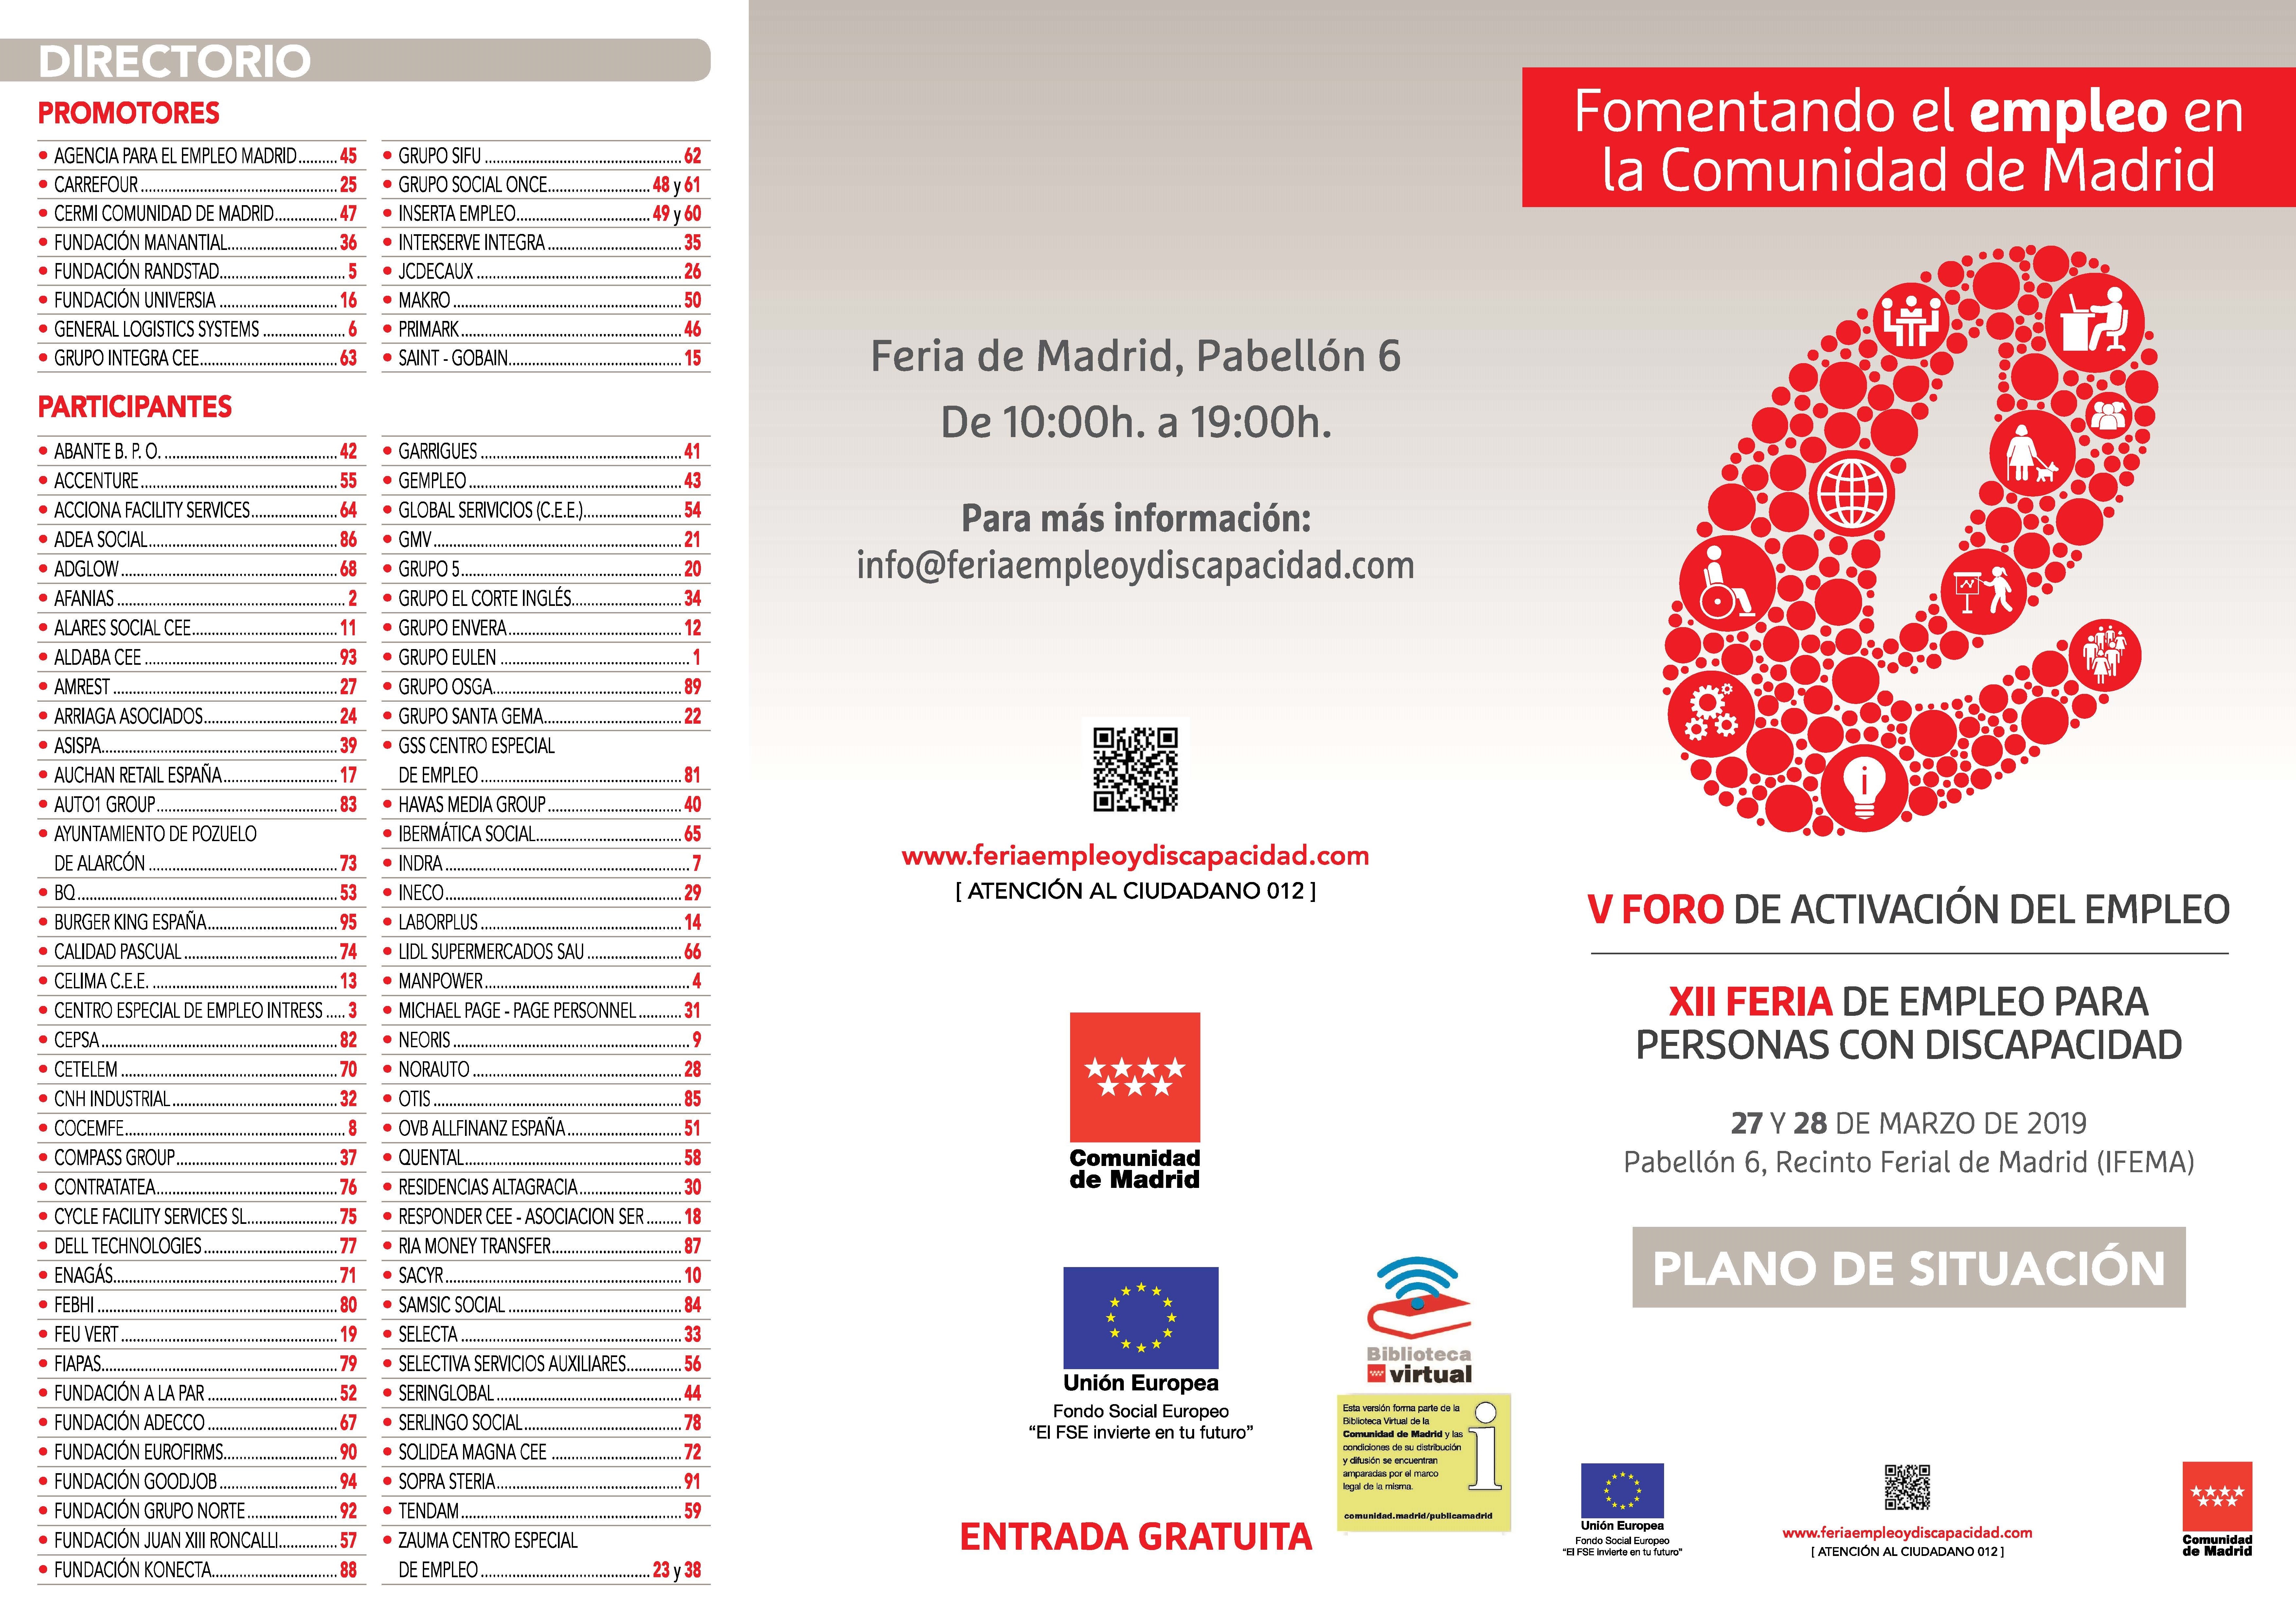 Portada de Folleto de situación de empresas y entidades de la XII Feria de Empleo para Personas con Discapacidad y V Foro de Activación del Empleo de la Comunidad de Madrid